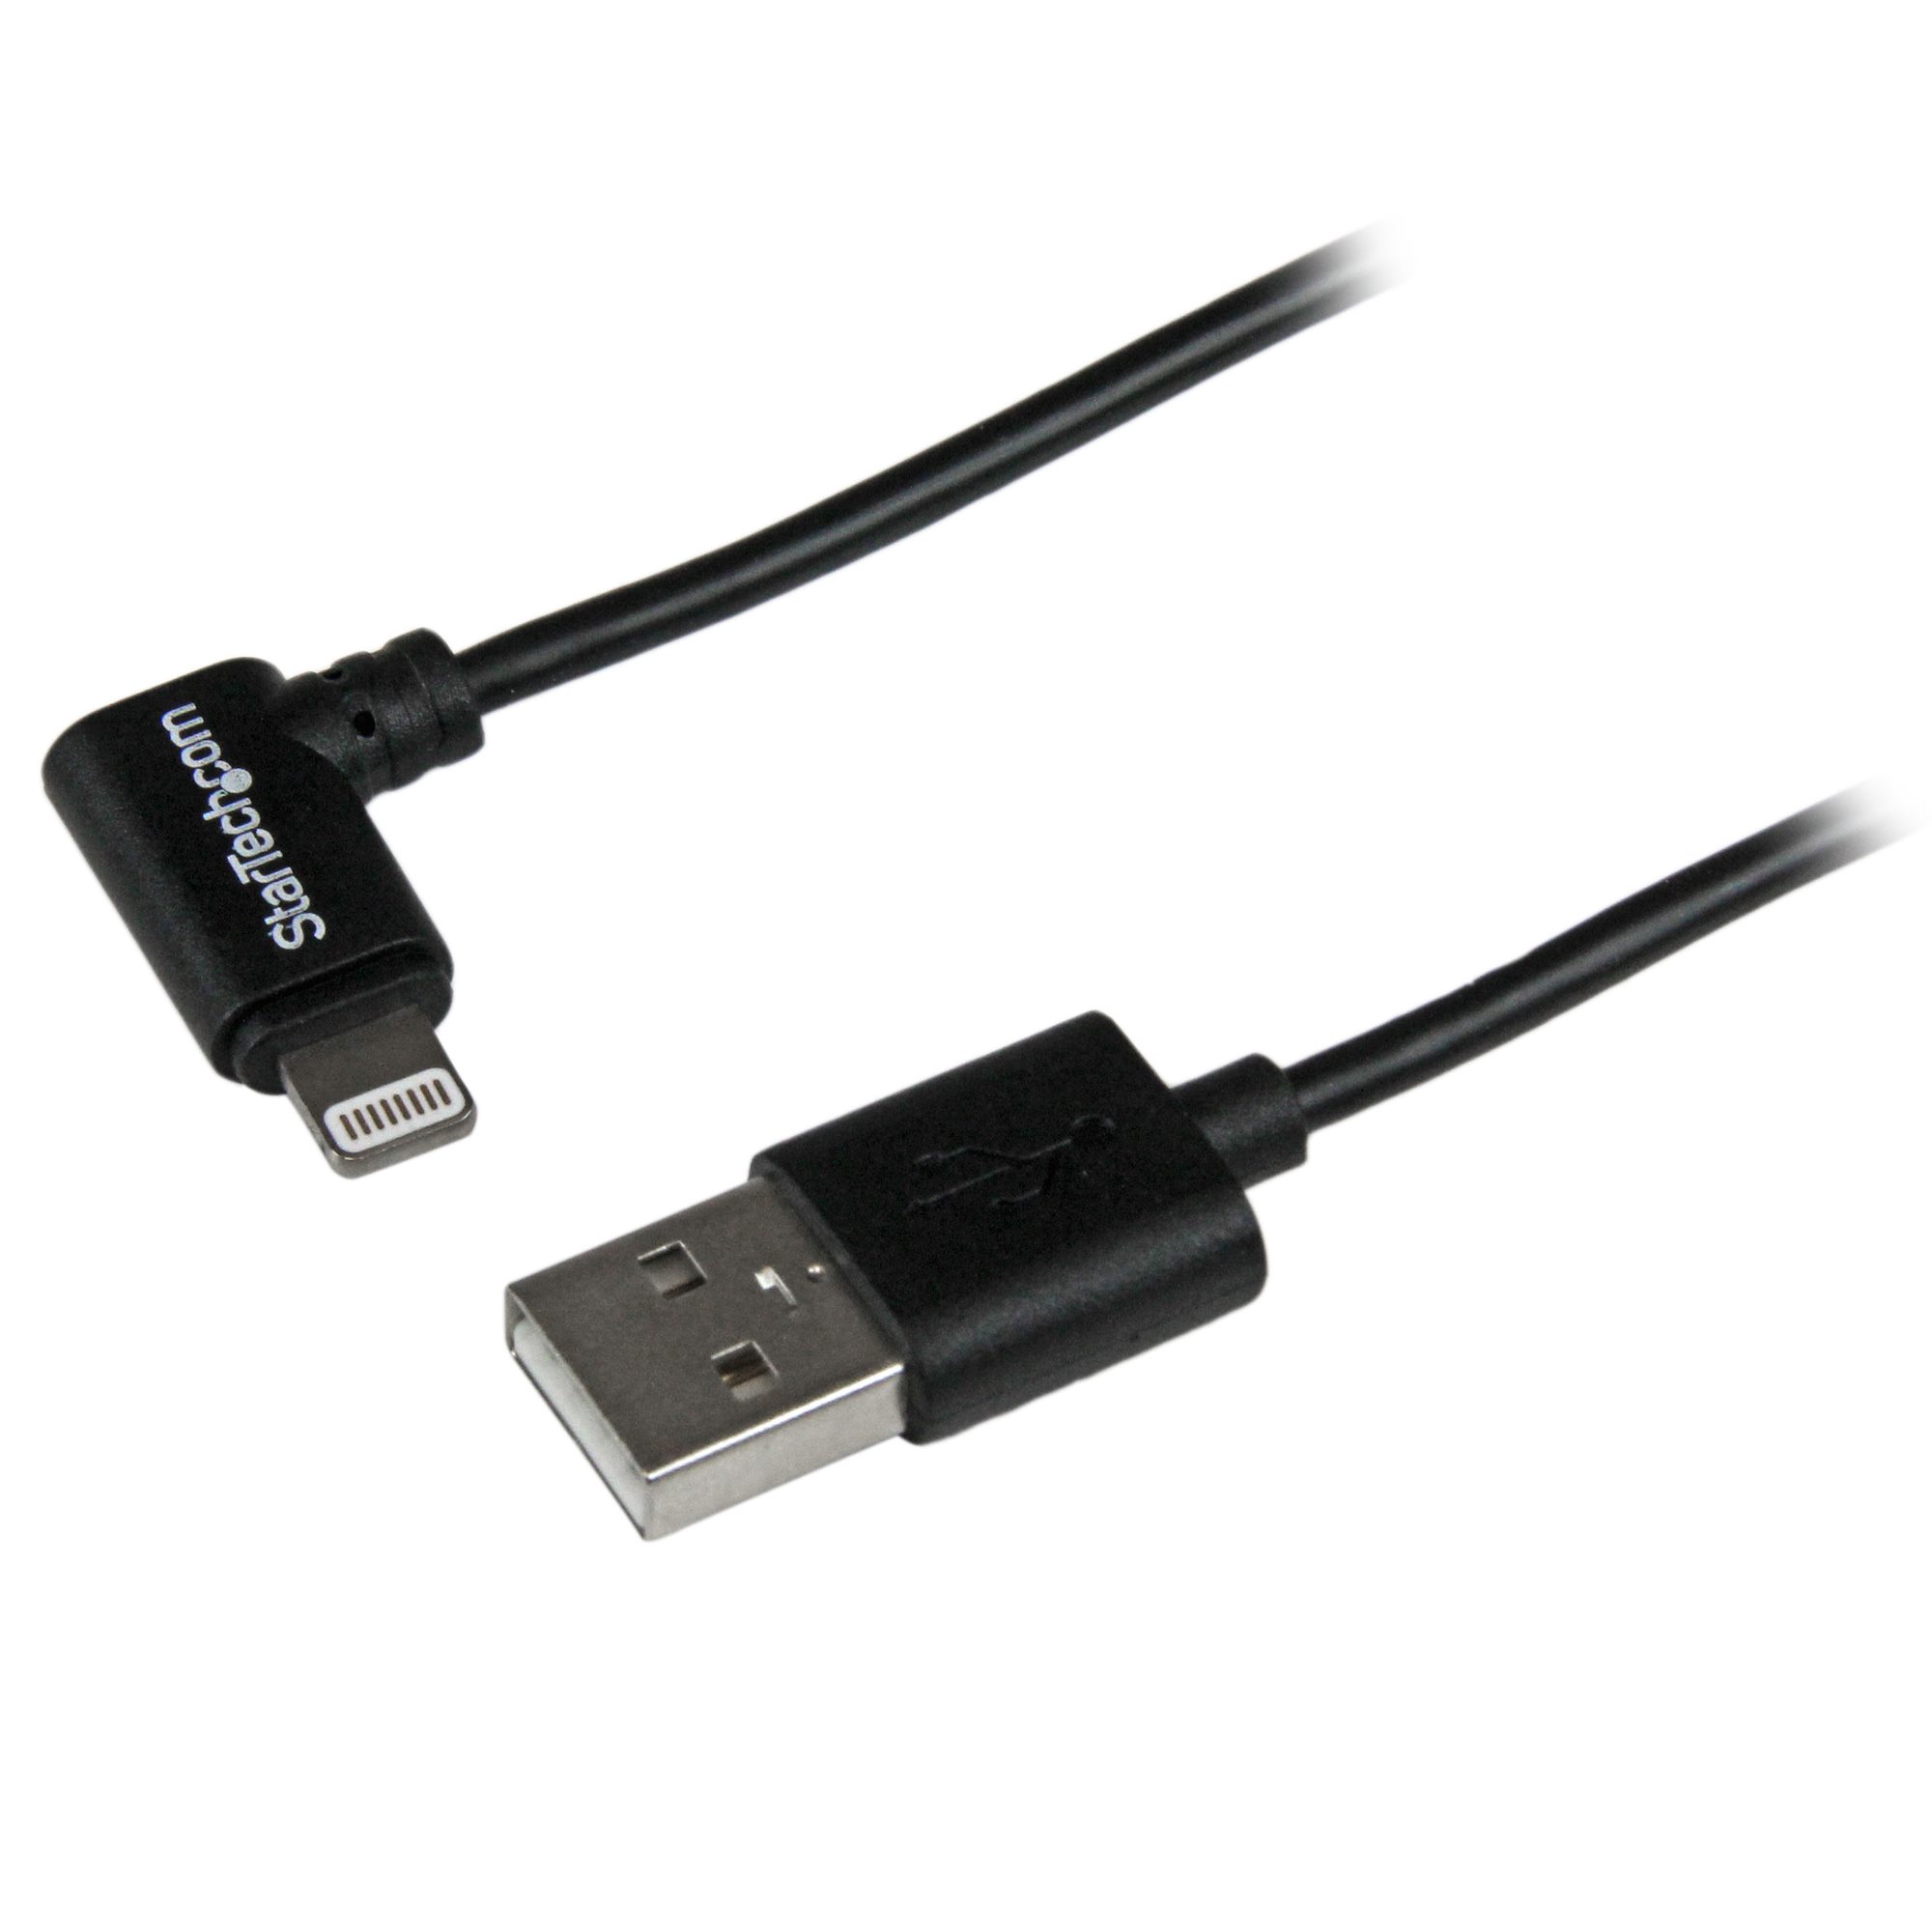 Cable USB a lightning de 2 m